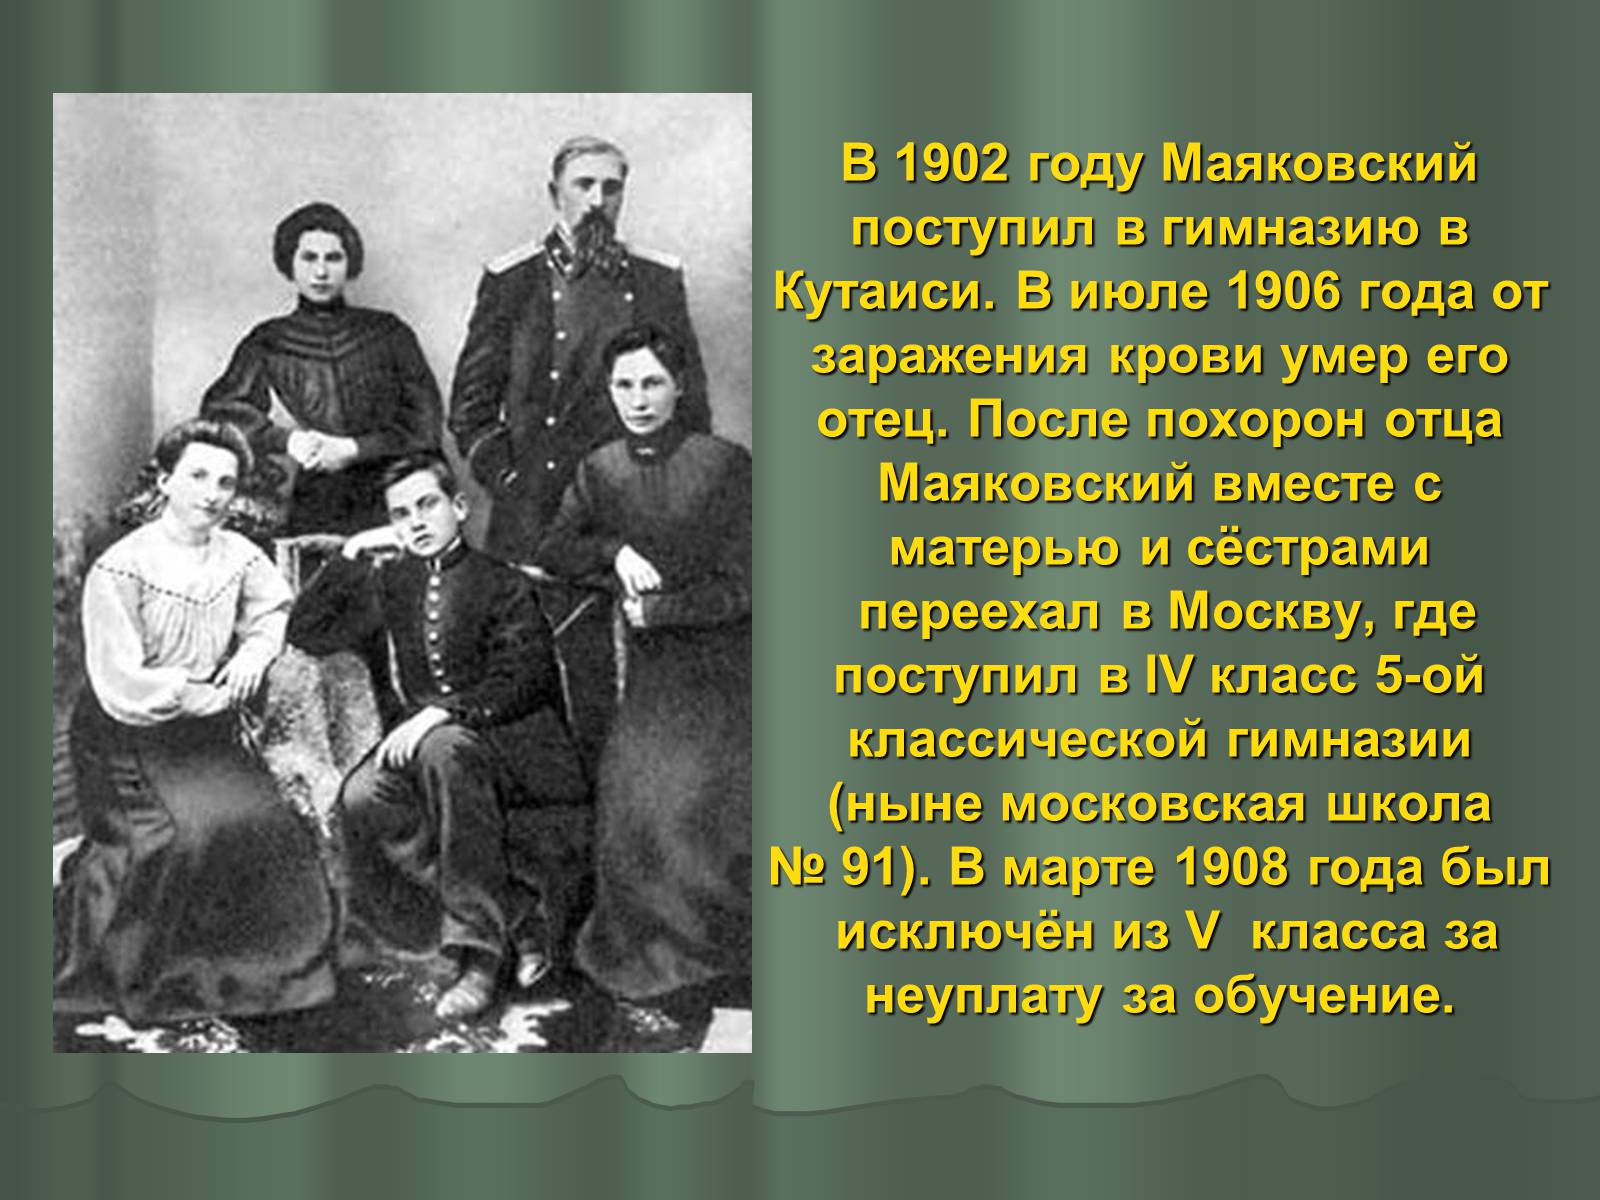 Образ жизни владимира маяковского. В 1902 году Маяковский поступил в гимназию в Кутаиси.. Маяковский Кутаиси 1902. Маяковский в 1906 году.